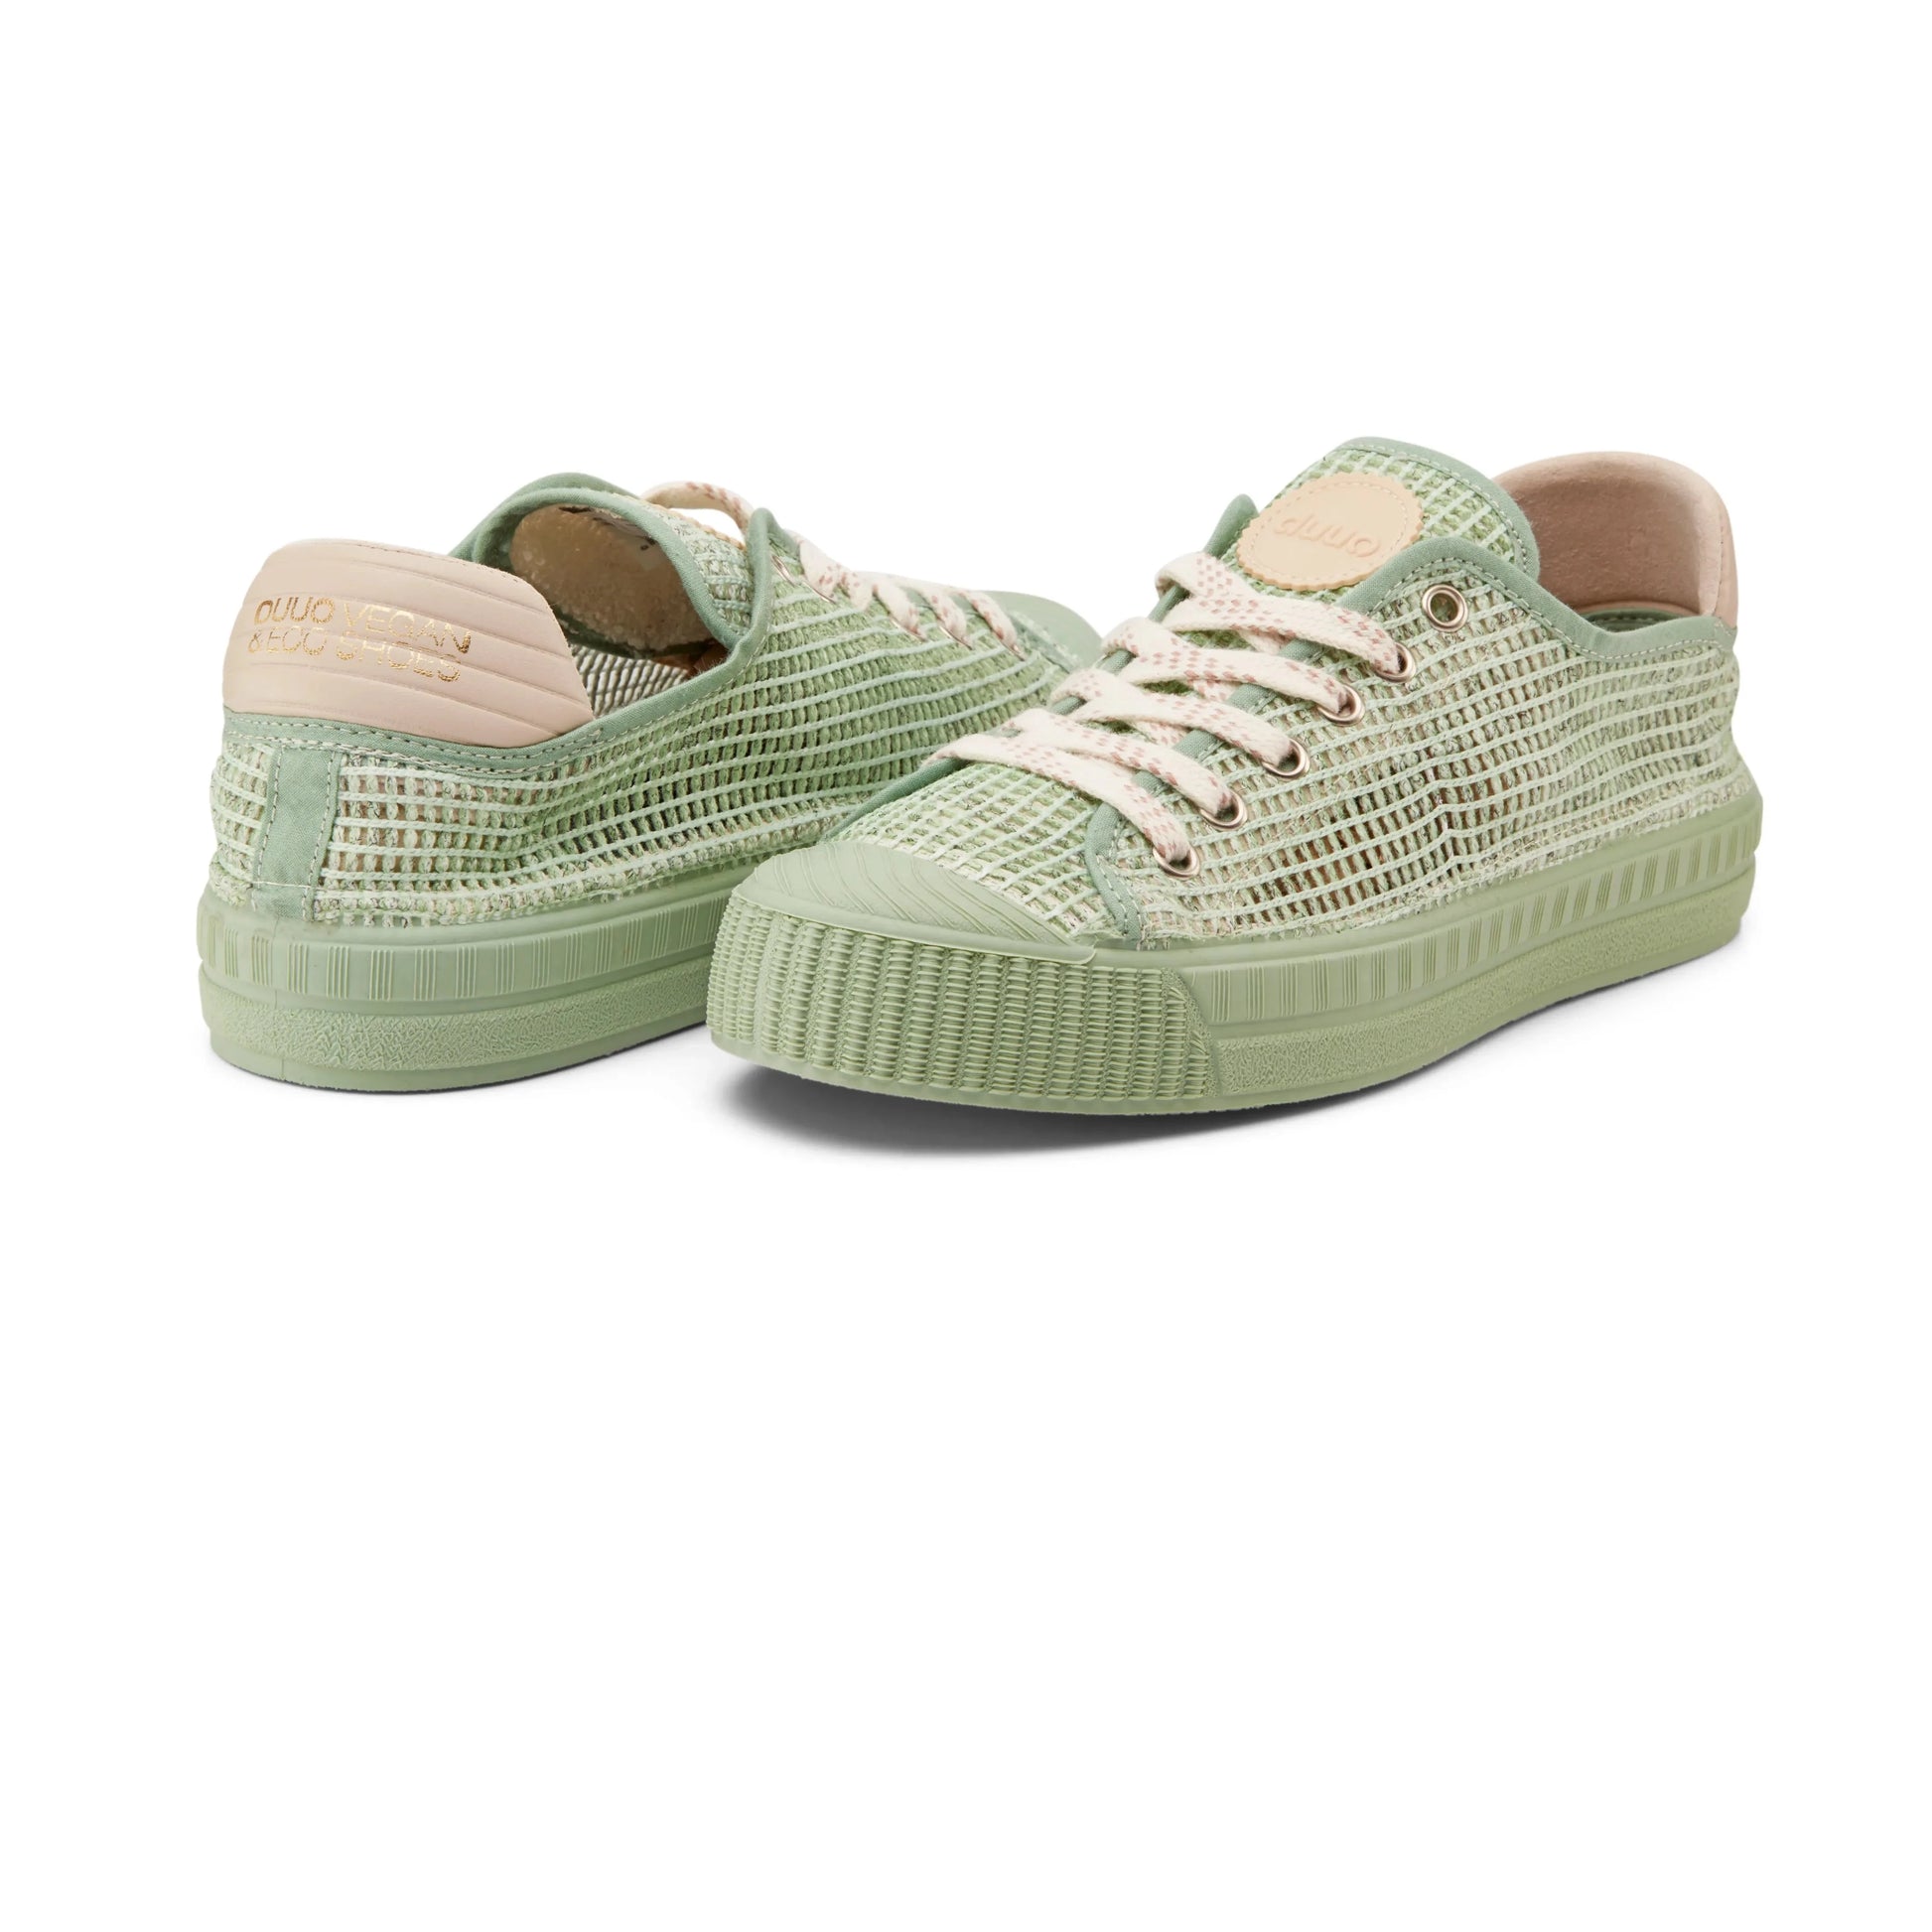 Sneakers De La Marca Duuo Para Hombre Modelo Col 097En Color Verde